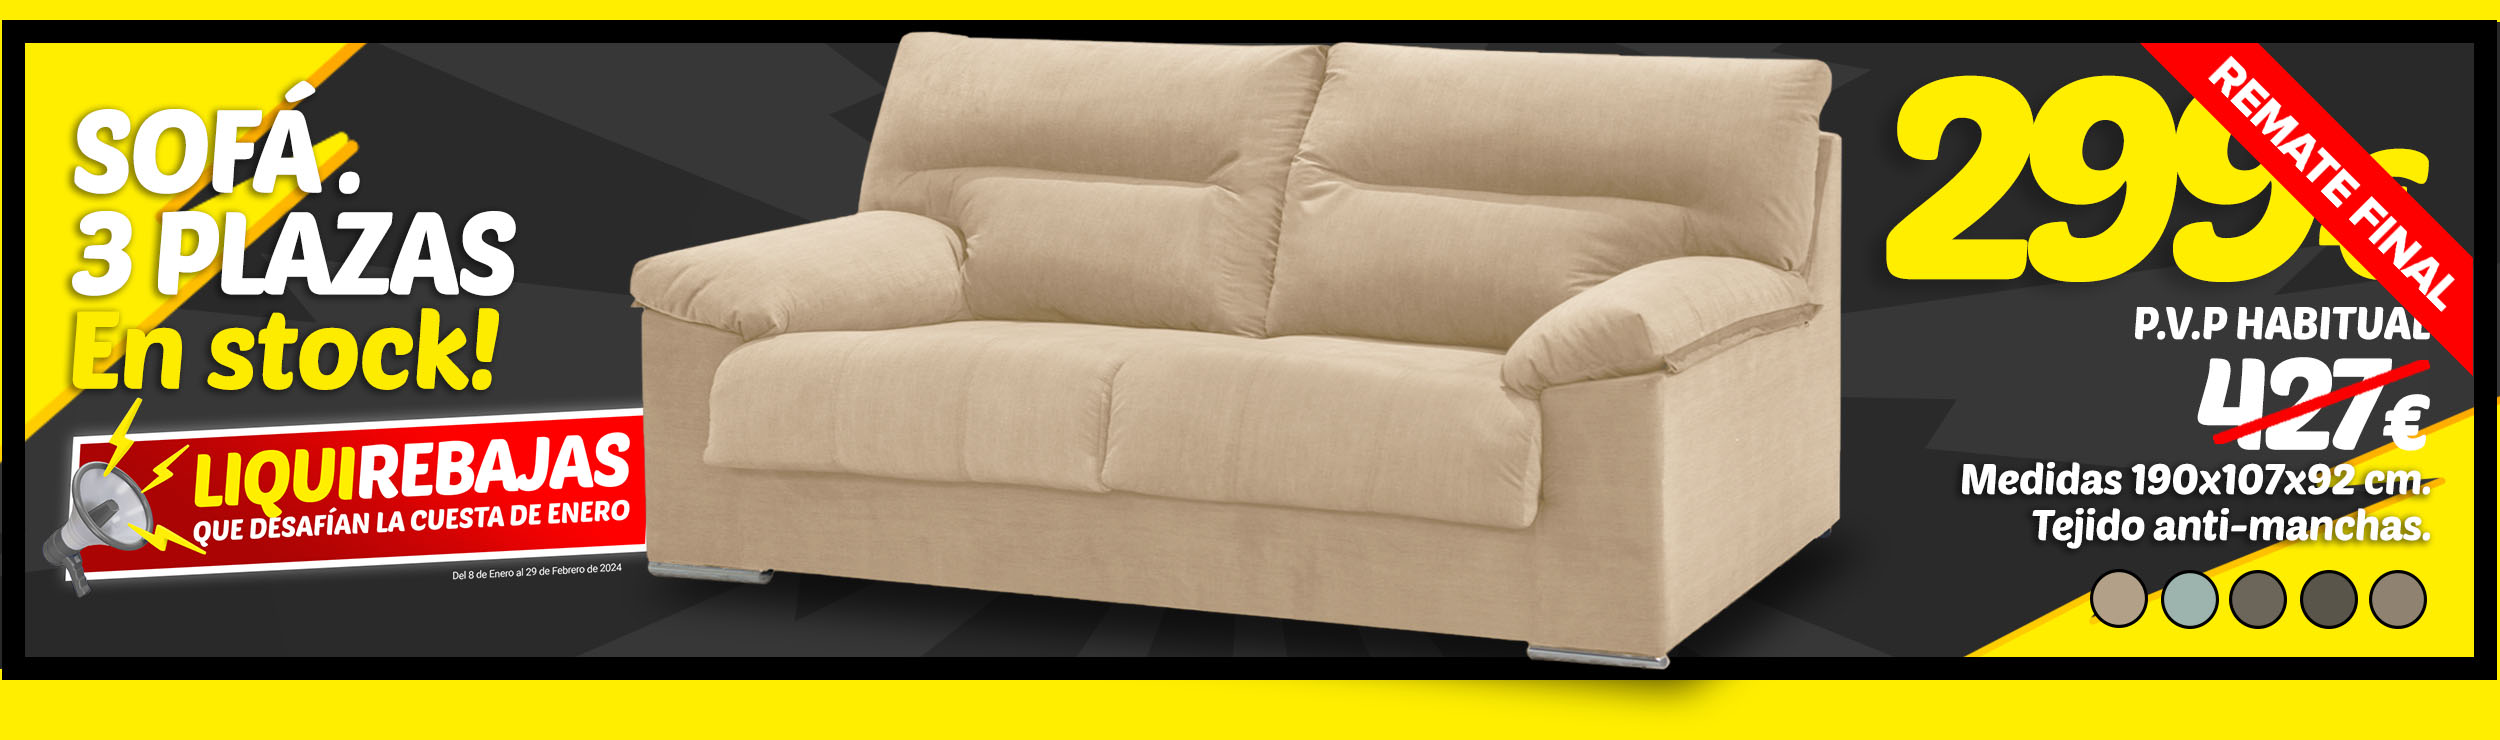 Diferentes tipos de respaldos para sofás de calidad, sofás baratos